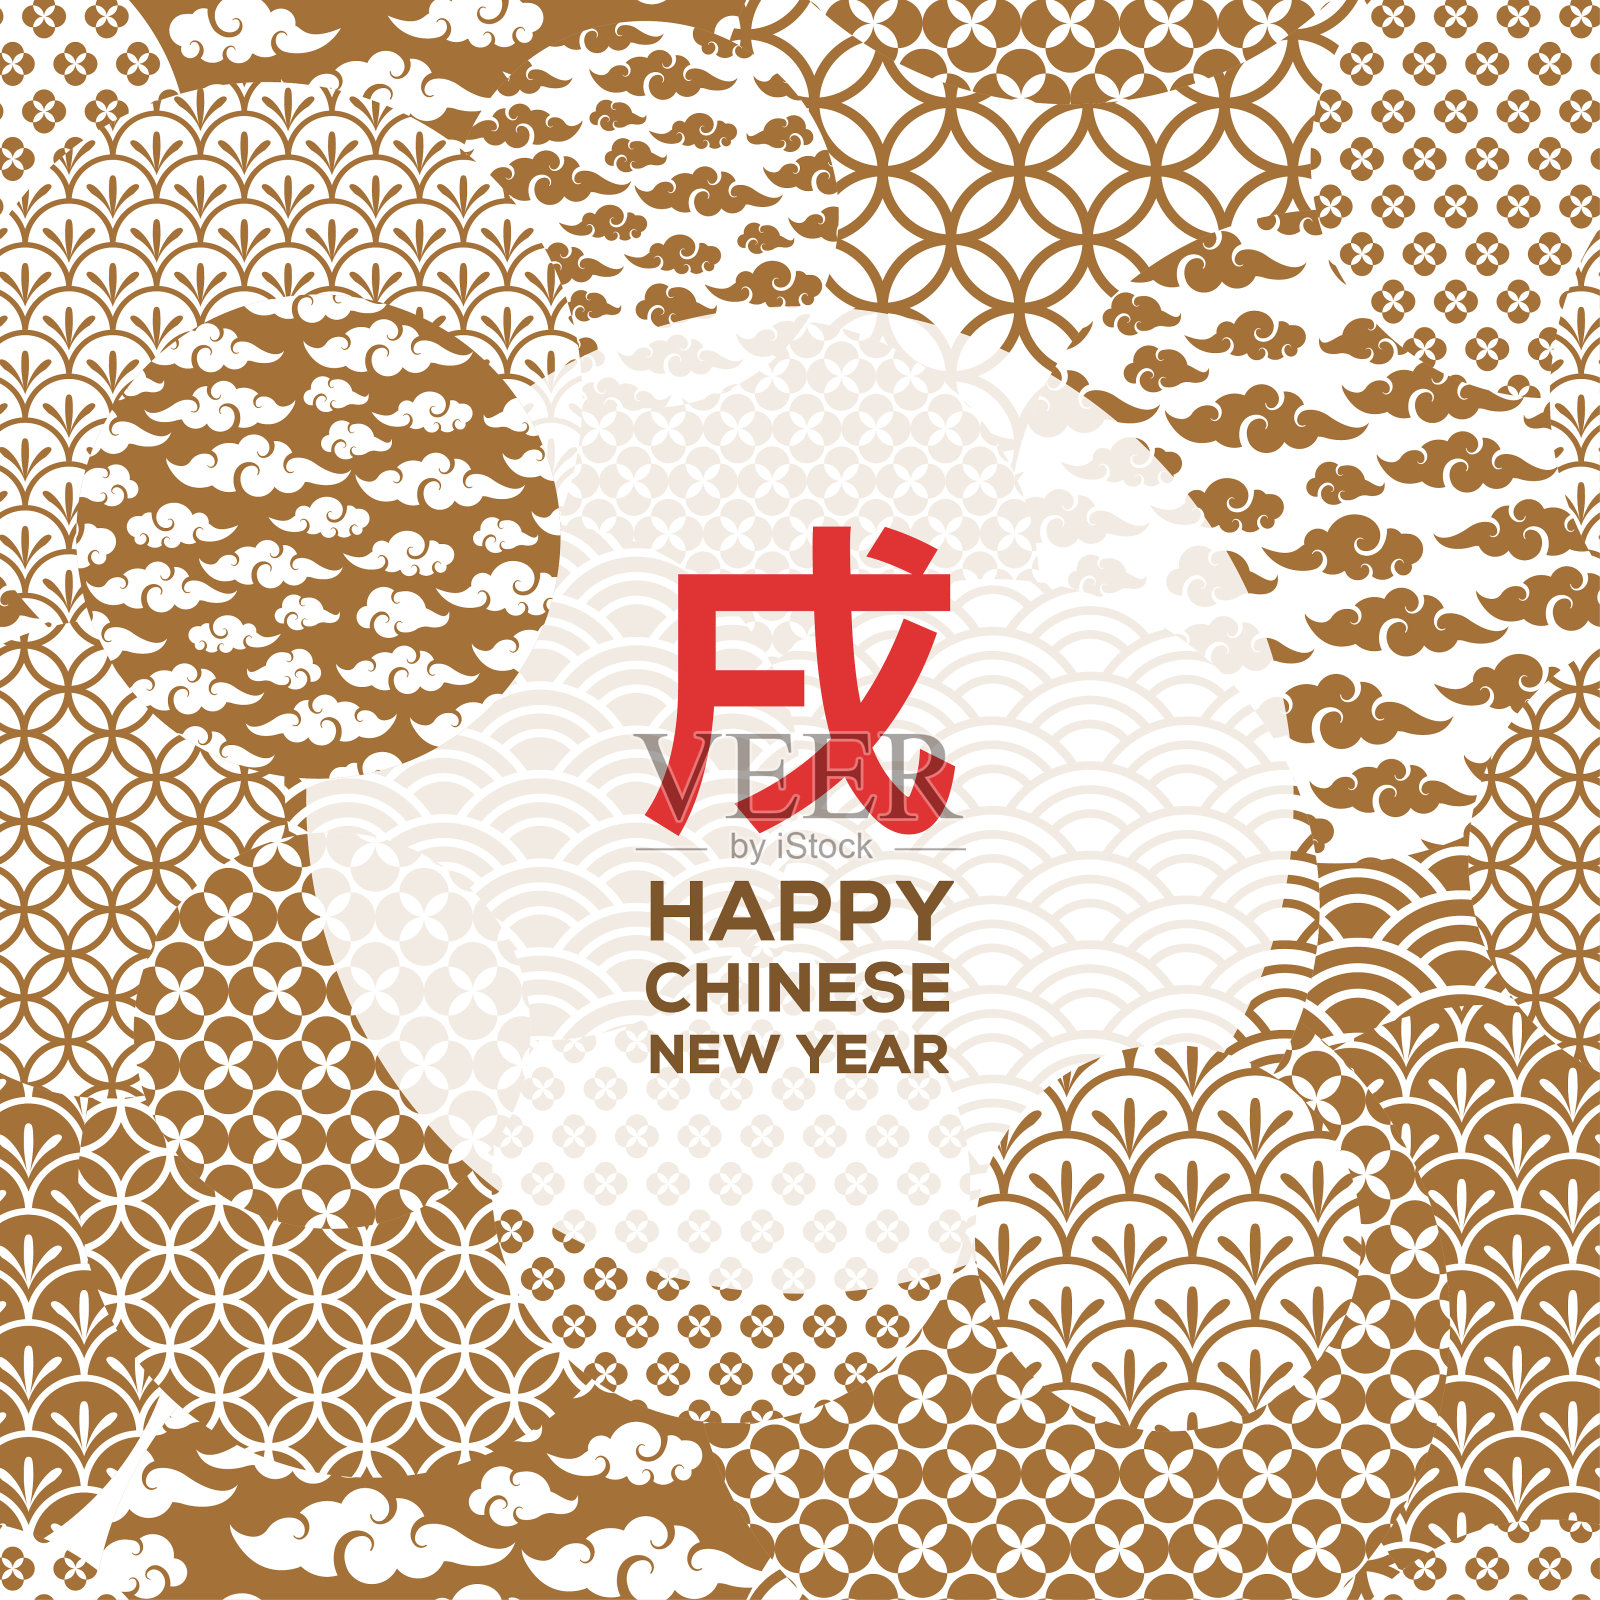 中国新年贺卡与黄金几何装饰形状背景图片素材